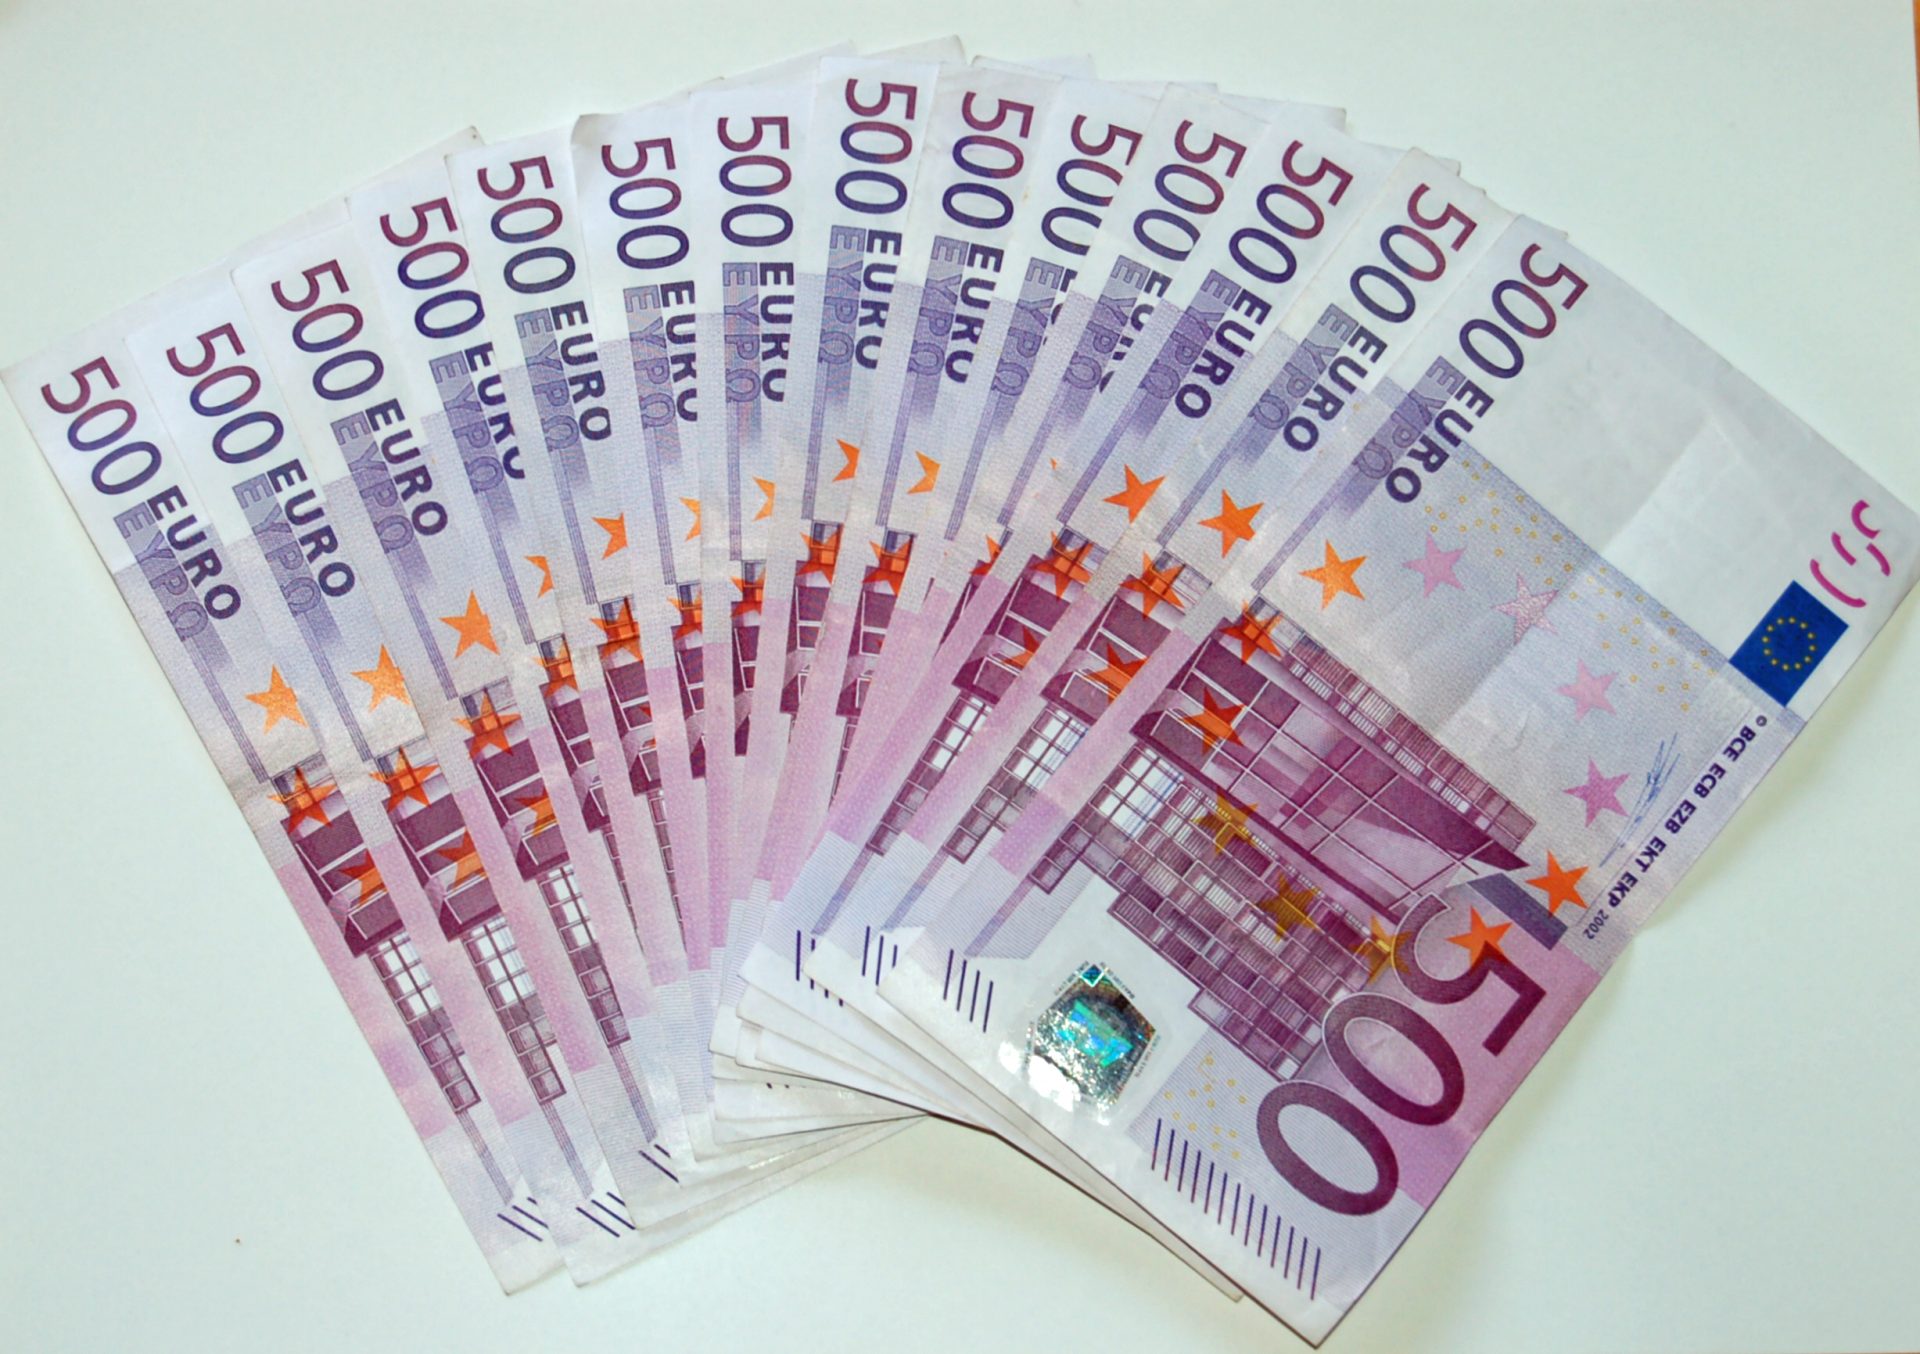 Notas de 500 euros chegam ao fim mas mantêm valor